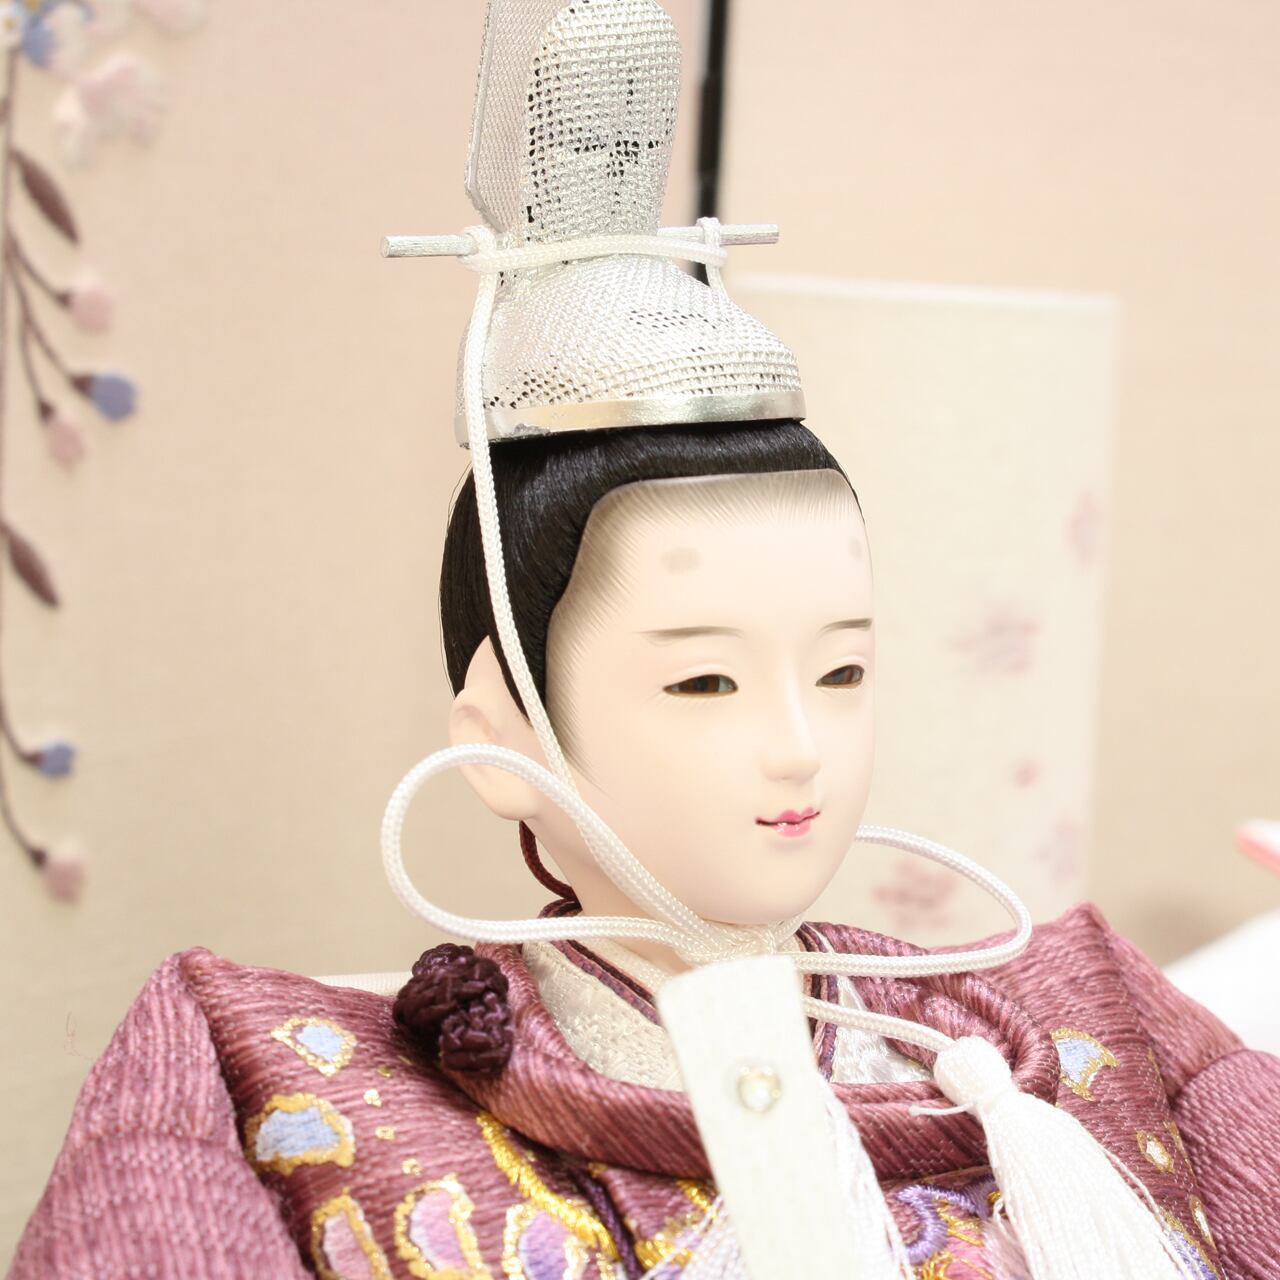 雛人形⭐豪華西陣織 親王飾り 京人形師による着付けの有職雛⭐送料無料